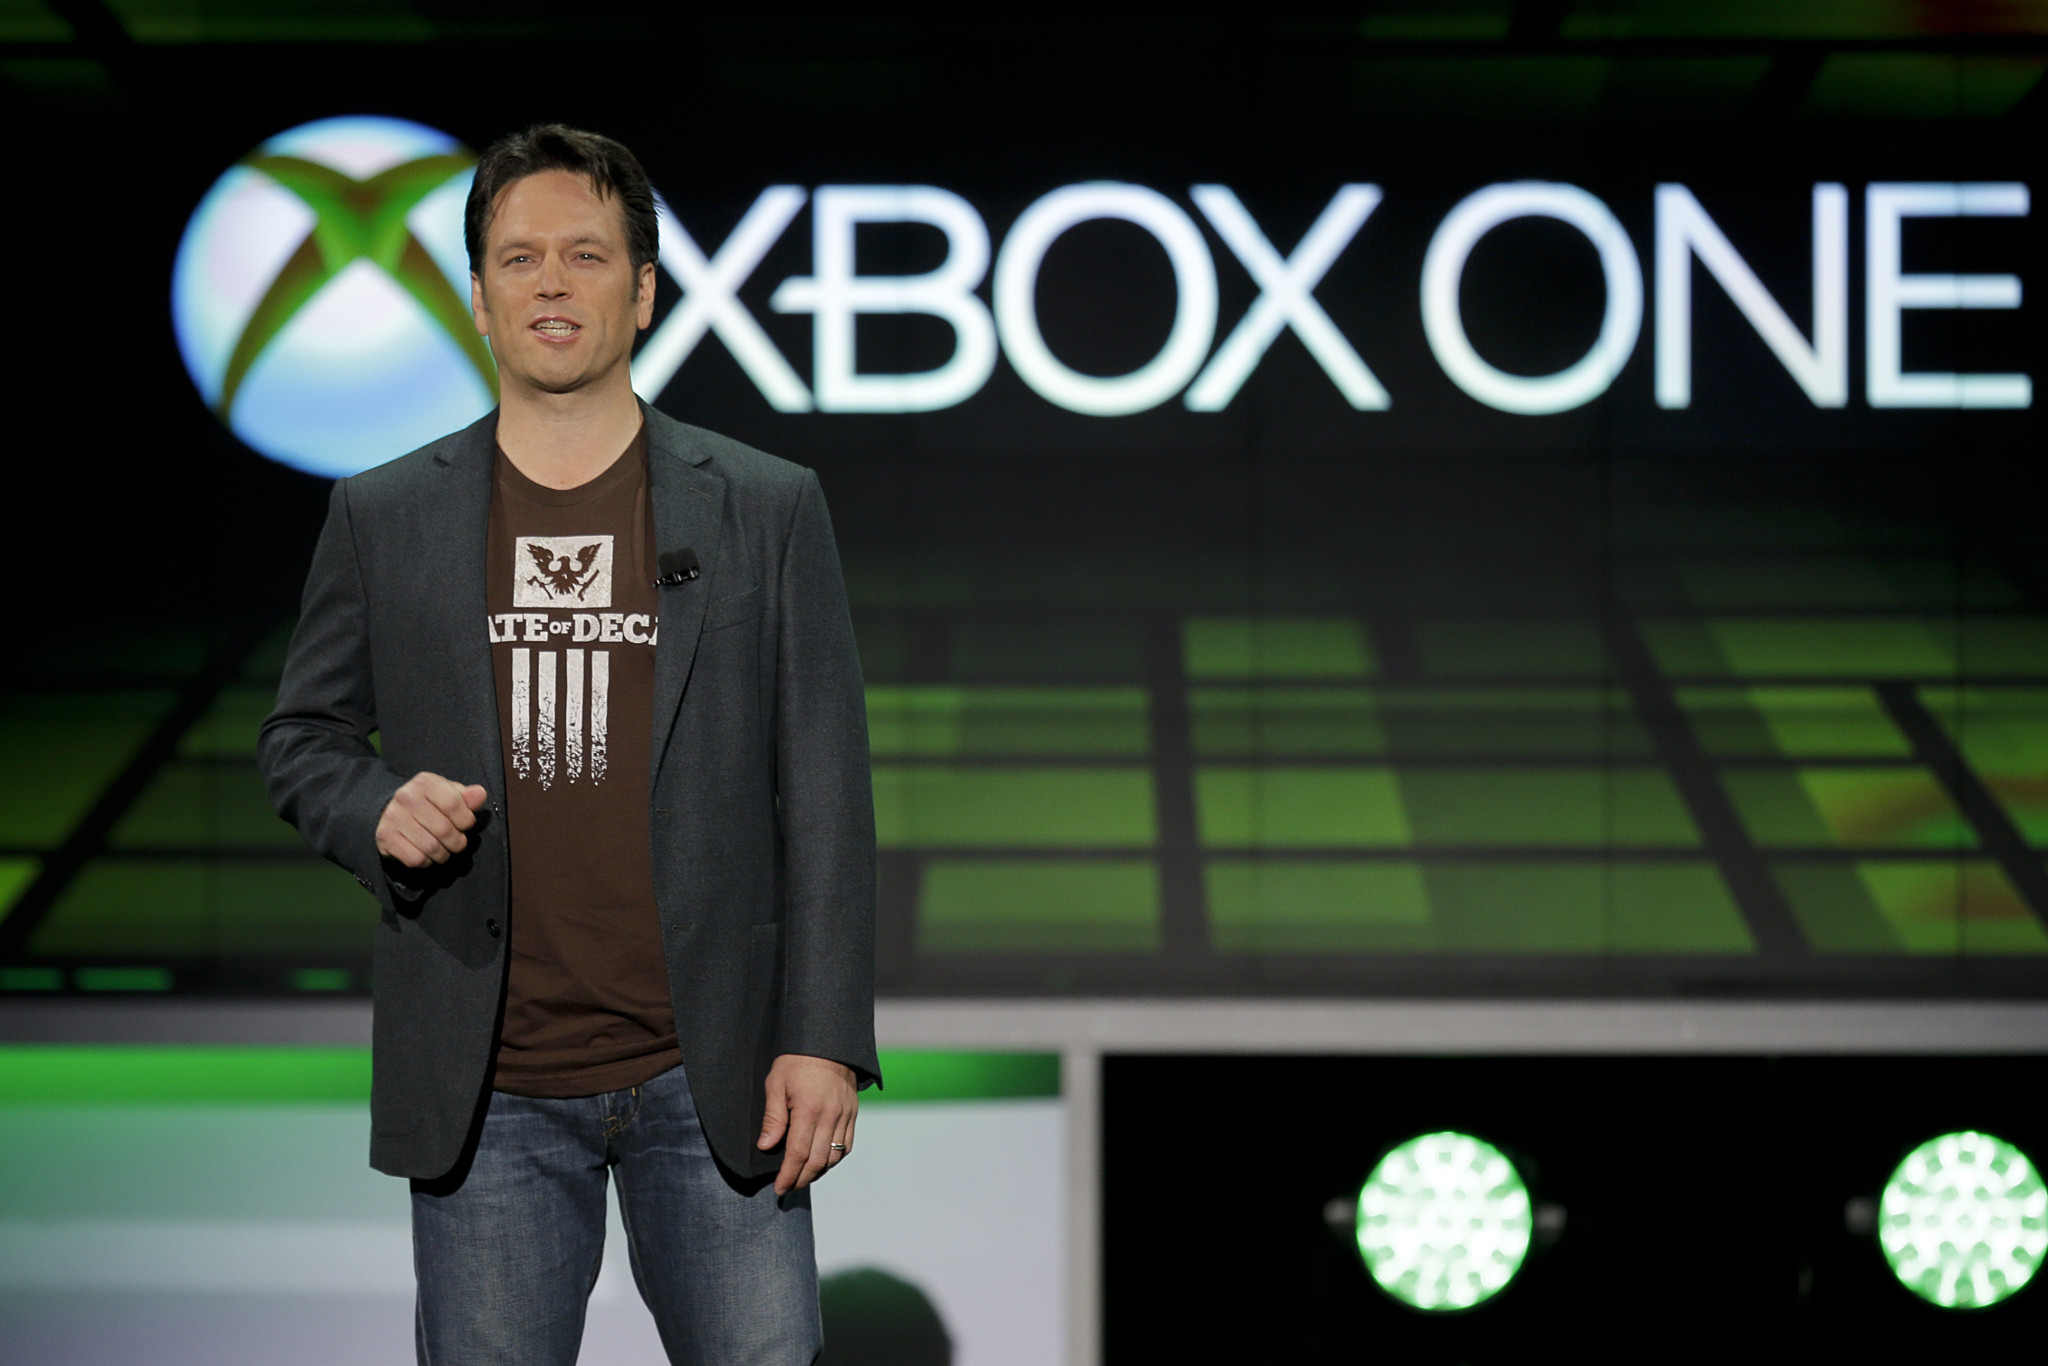 فيل سبنسر فريق Xbox سيقدم أشياء لم يقدمها من قبل بمعرض E3